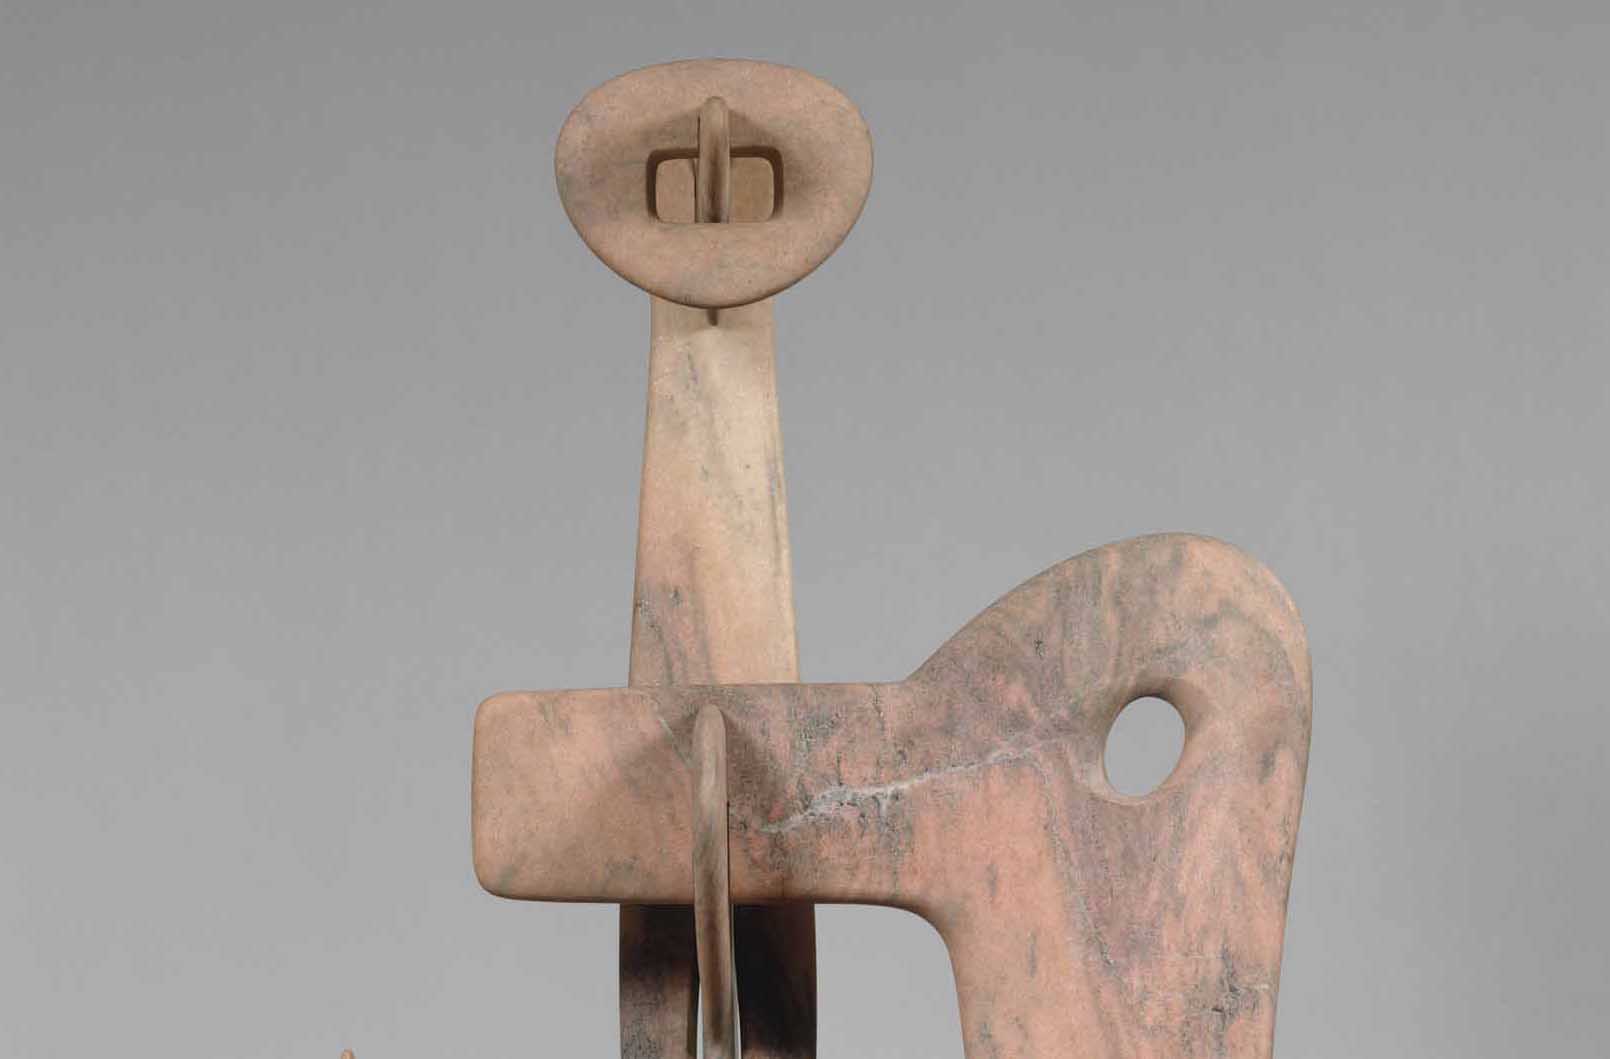 A detail from Isamu Noguchi's scultpture, Kouros